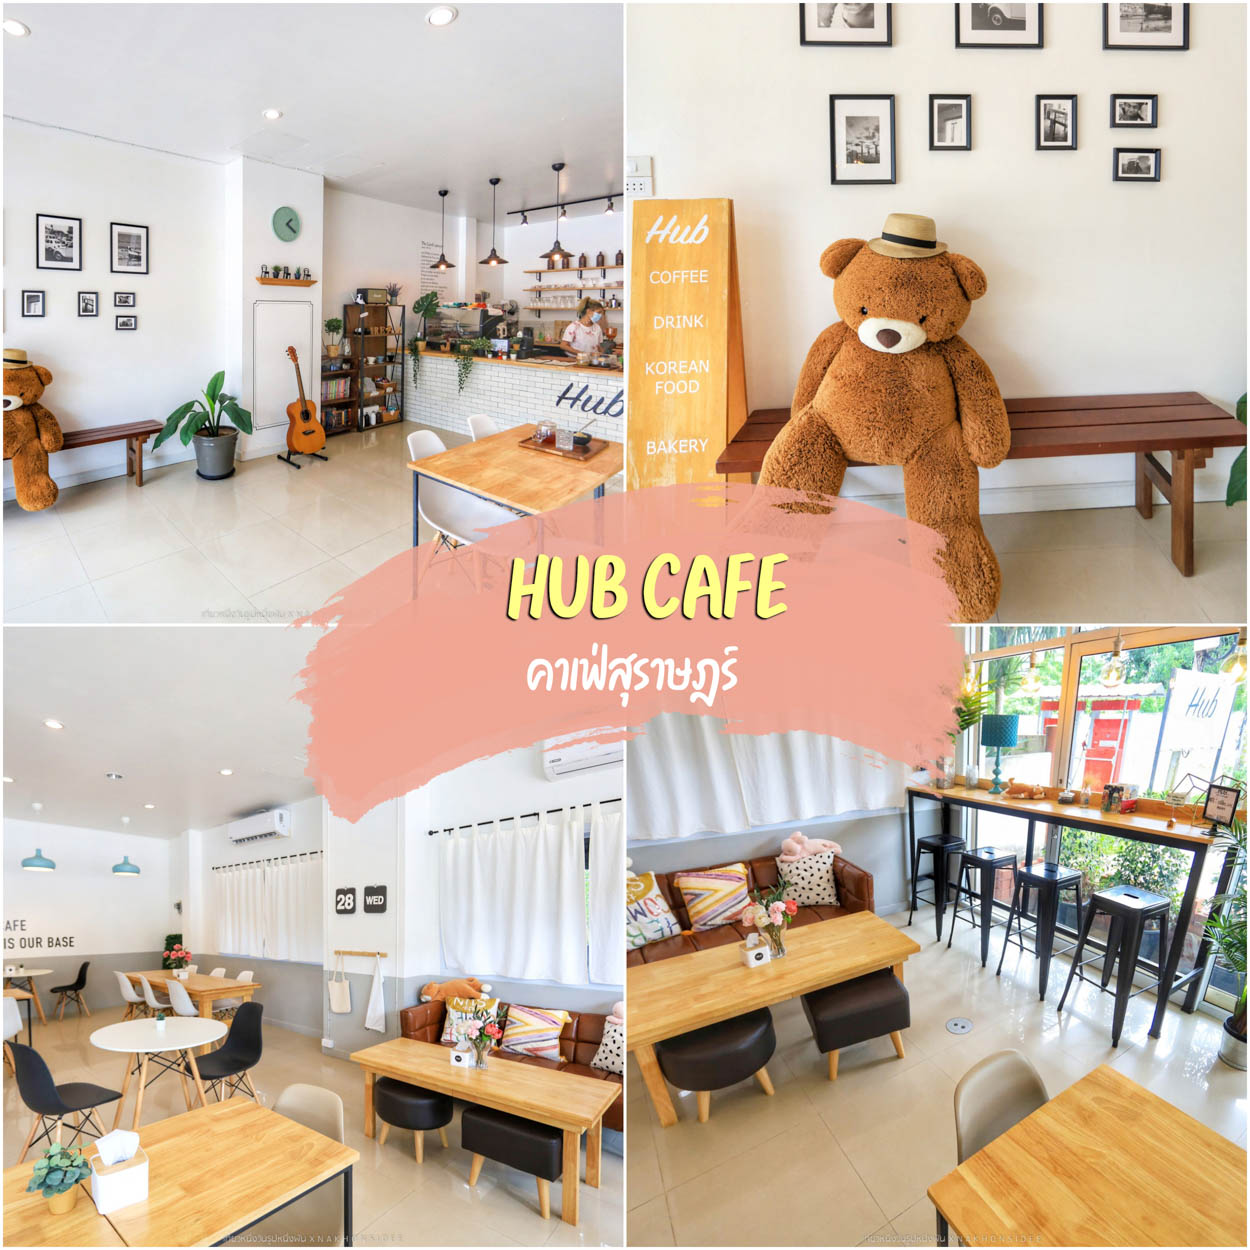 Hub Cafe Suratthani คาเฟ่สุราษฎร์ ใกล้ราชภัฎ สุด Minimal ถ่ายมุมไหนก็ว้าวววว